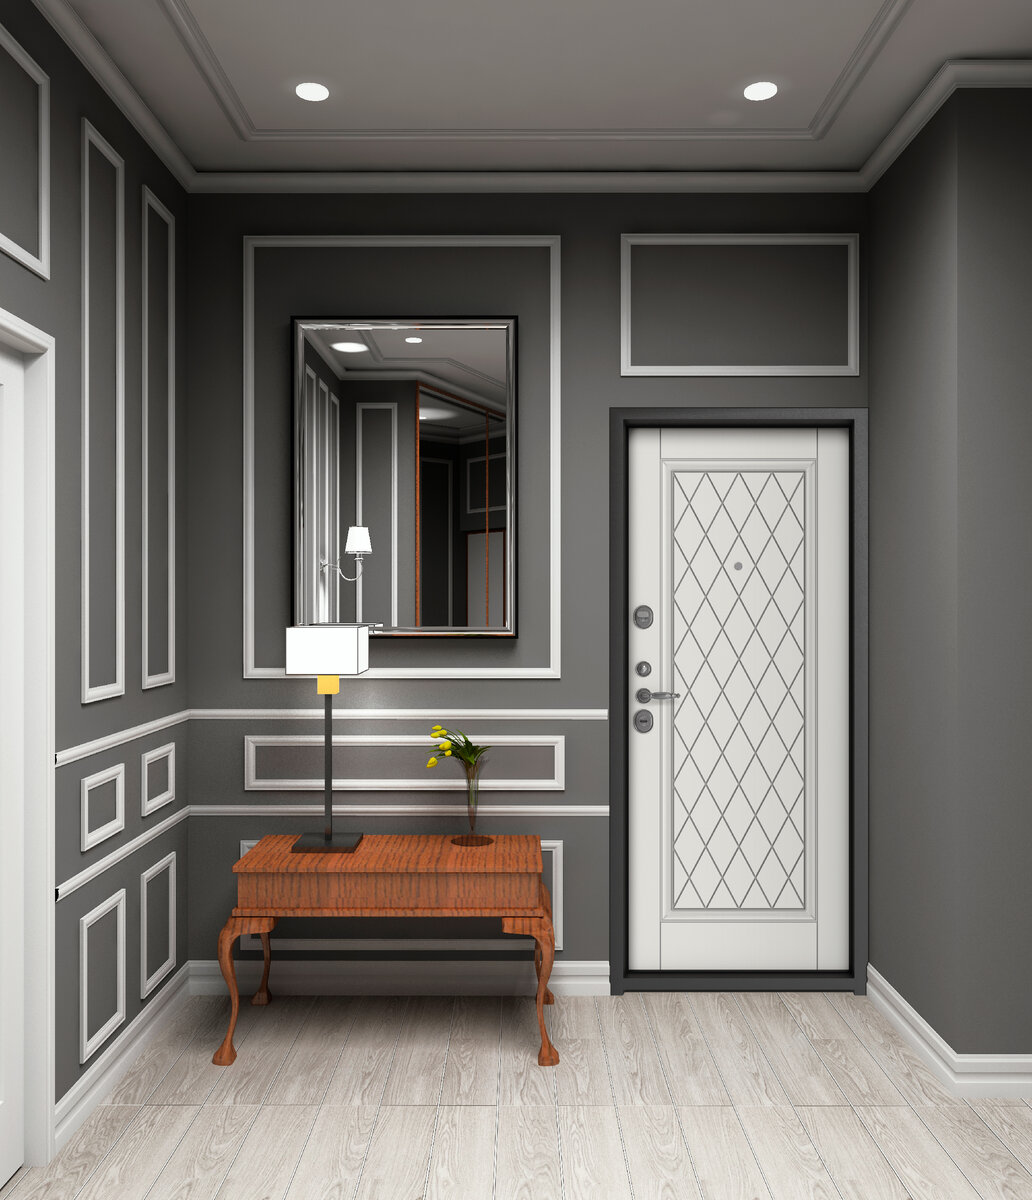 Двери в английском стиле в интерьере. 5 вариантов дизайна, где они на своём месте идеи для дома,интерьер и дизайн